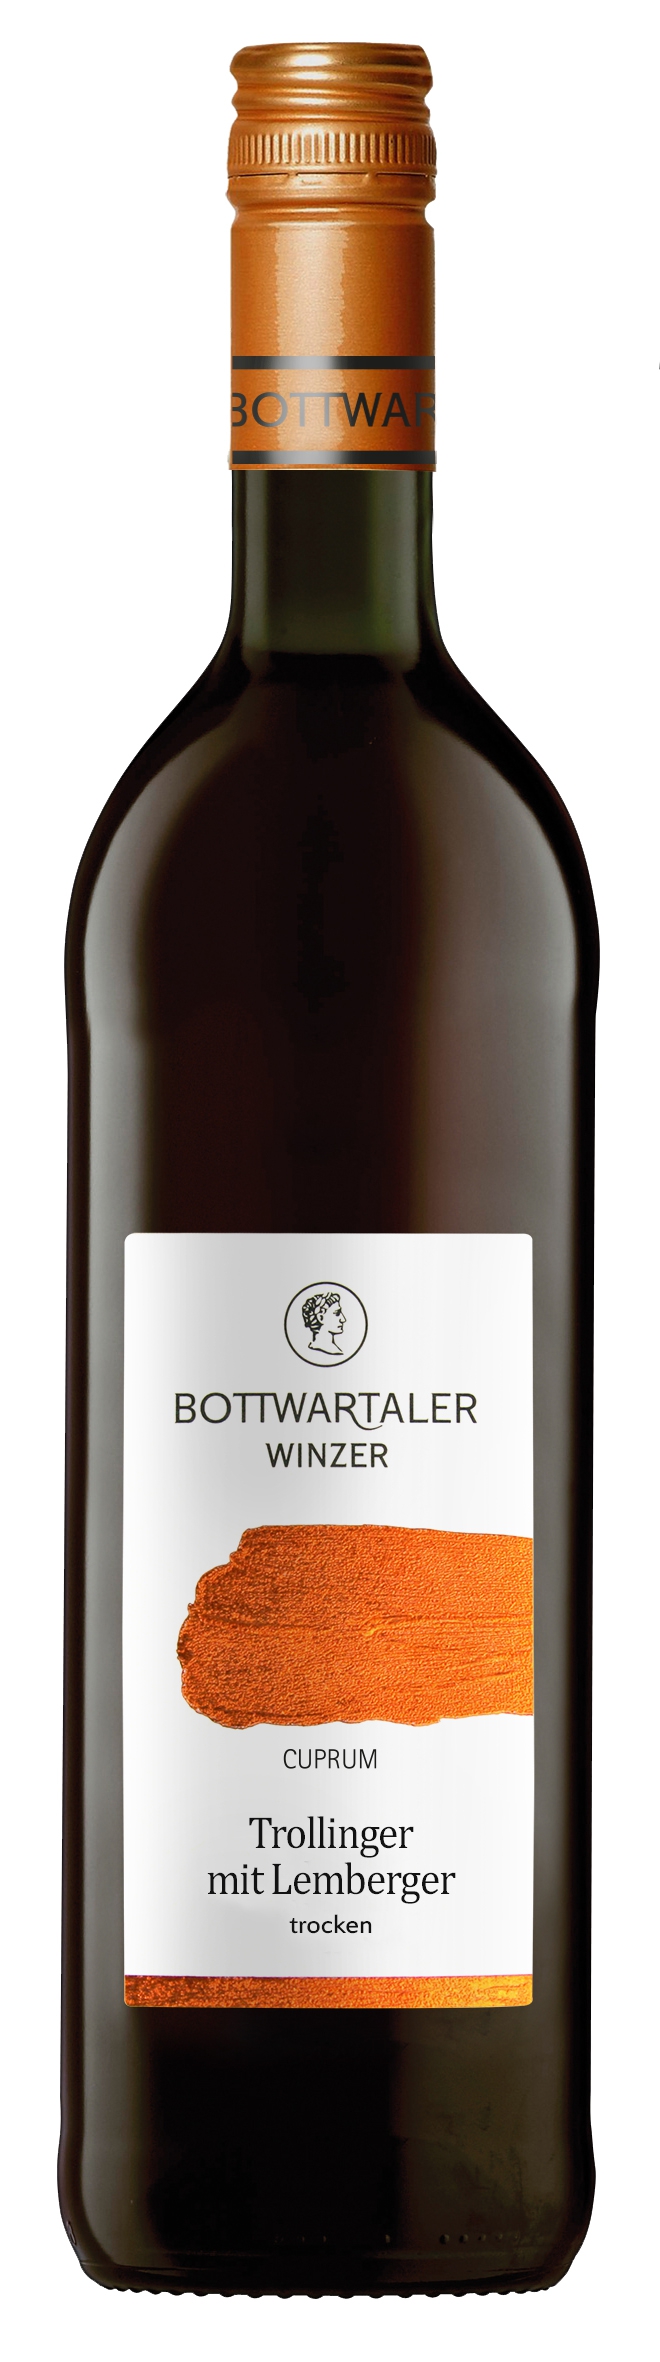 Bottwartaler Winzer 2021 Trollinger mit Lemberger Beilsteiner Wartberg / Kupfer trocken